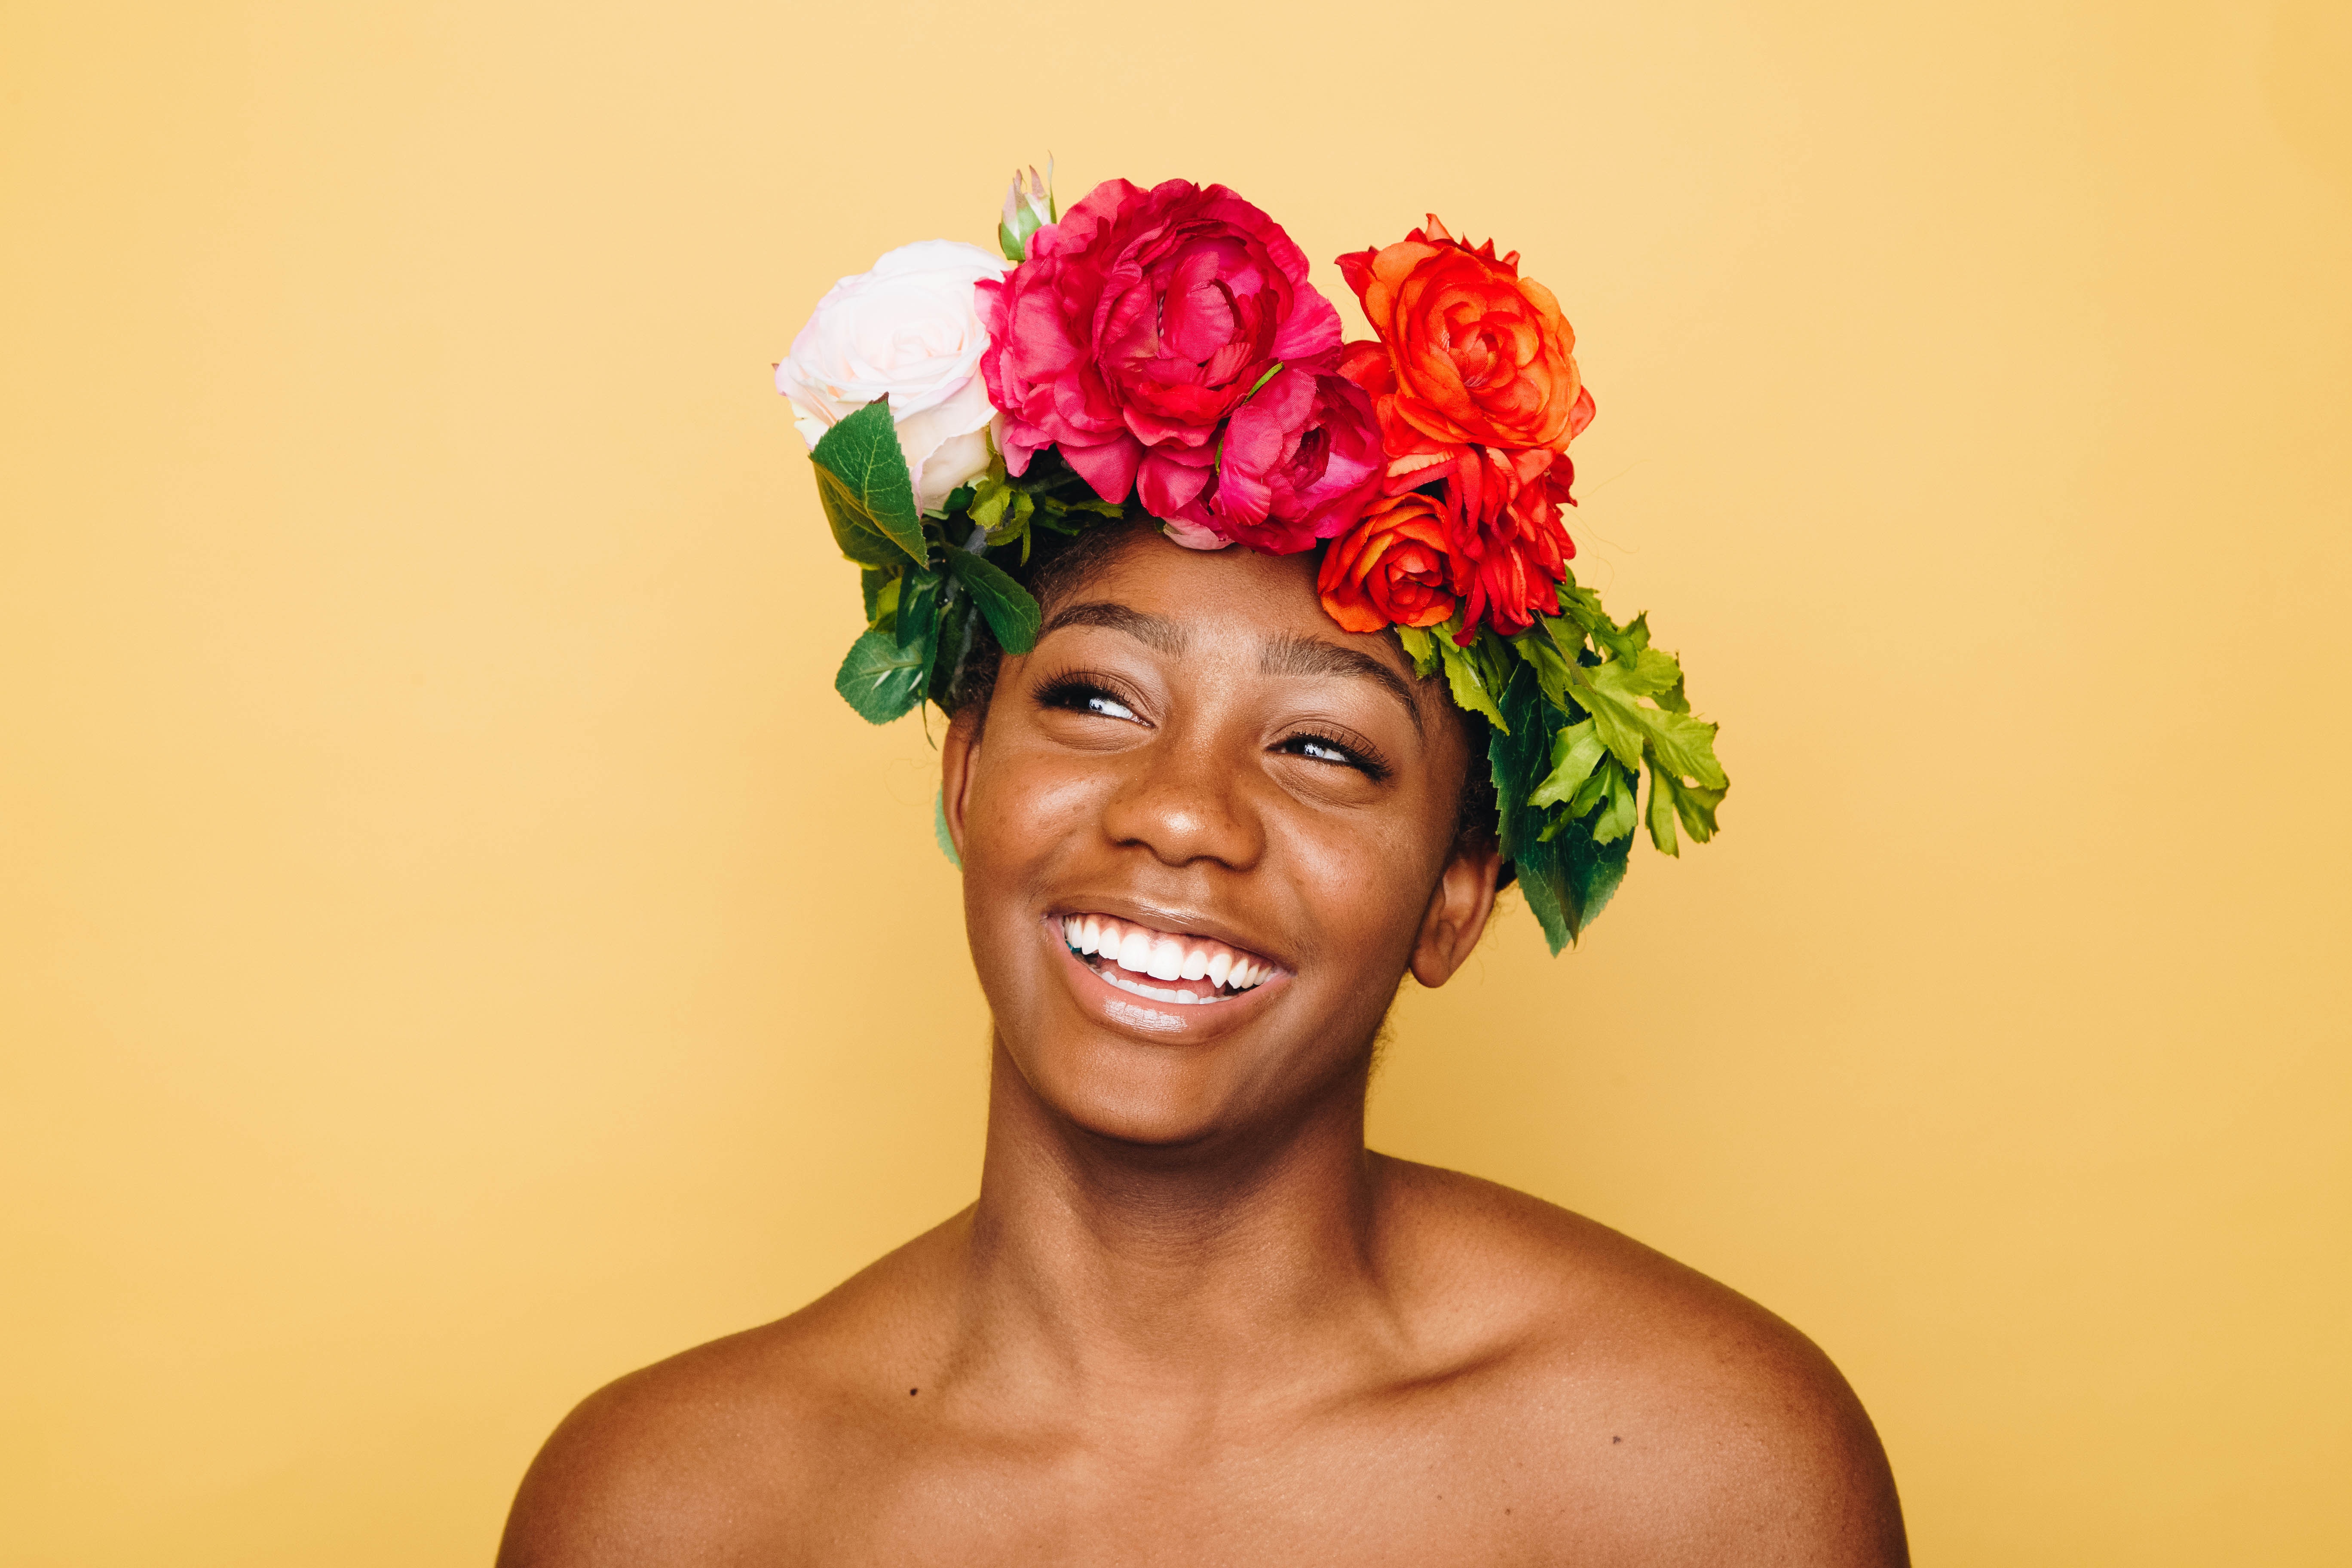 ragazza sorridente con una corona di fiori in testa